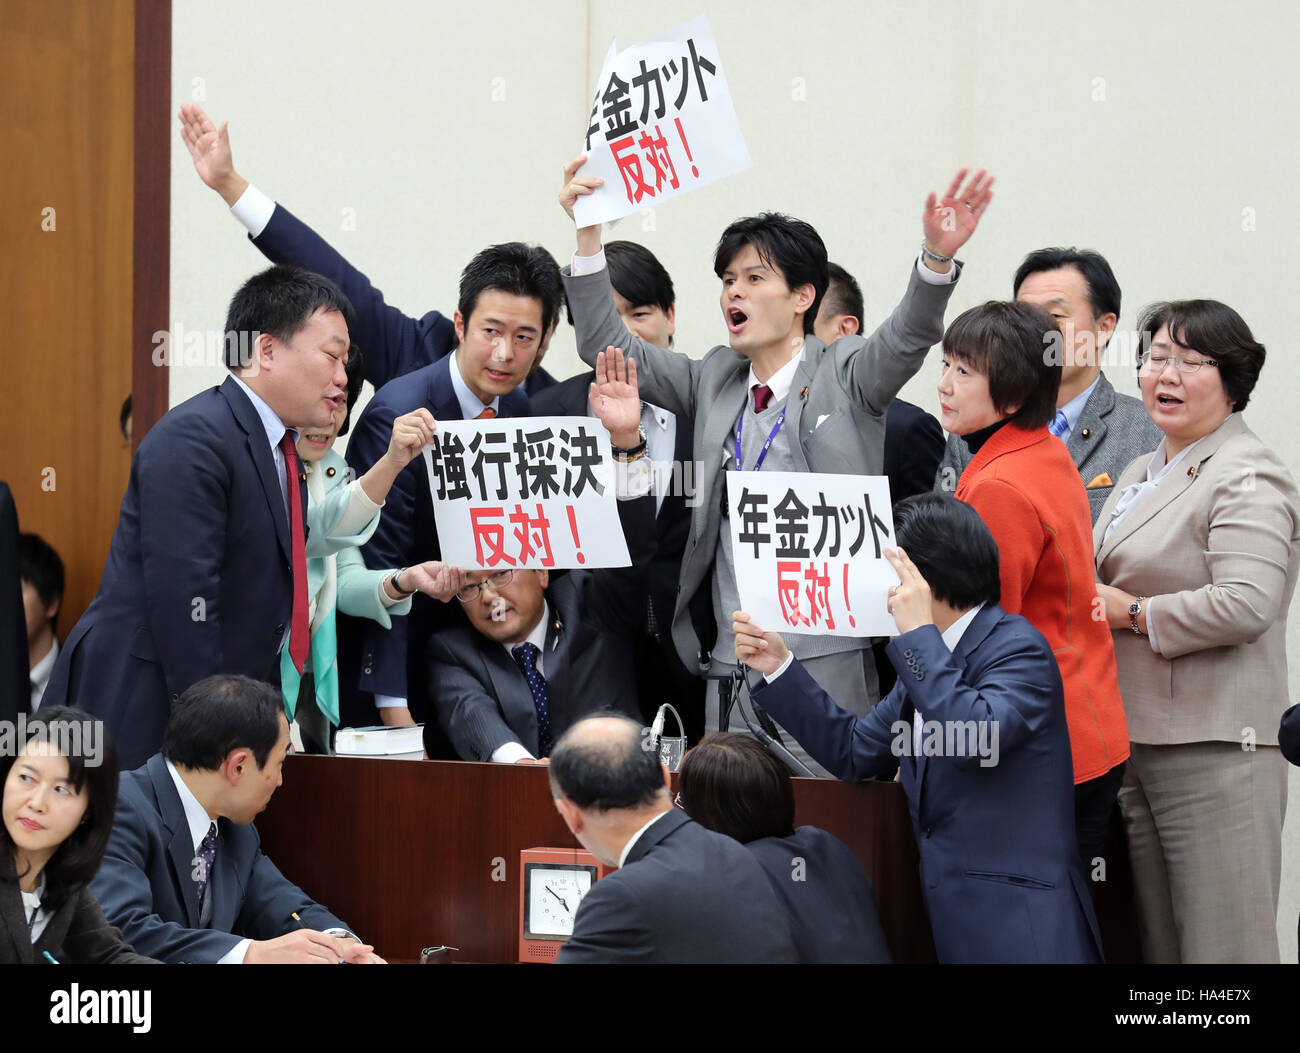 Tokio, Japón. 25 Nov, 2016. Los legisladores de la oposición se apresuran a presidente Hideki Niwa y mostrar pancartas "oponerse por la fuerza a la aprobación del proyecto de ley' en la salud, trabajo y Welfarre sesión del Comité de la Cámara Baja de la Dieta Nacional en Tokio el viernes, 25 de noviembre de 2016. Los partidos de la coalición gobernante promulgó la ley de reforma de pensiones del gobierno durante el período de sesiones del Comité, mientras que los miembros de los partidos de oposición en contra de la protesta obligó a la aprobación del proyecto de ley. © Yoshio Tsunoda/AFLO/Alamy Live News Foto de stock